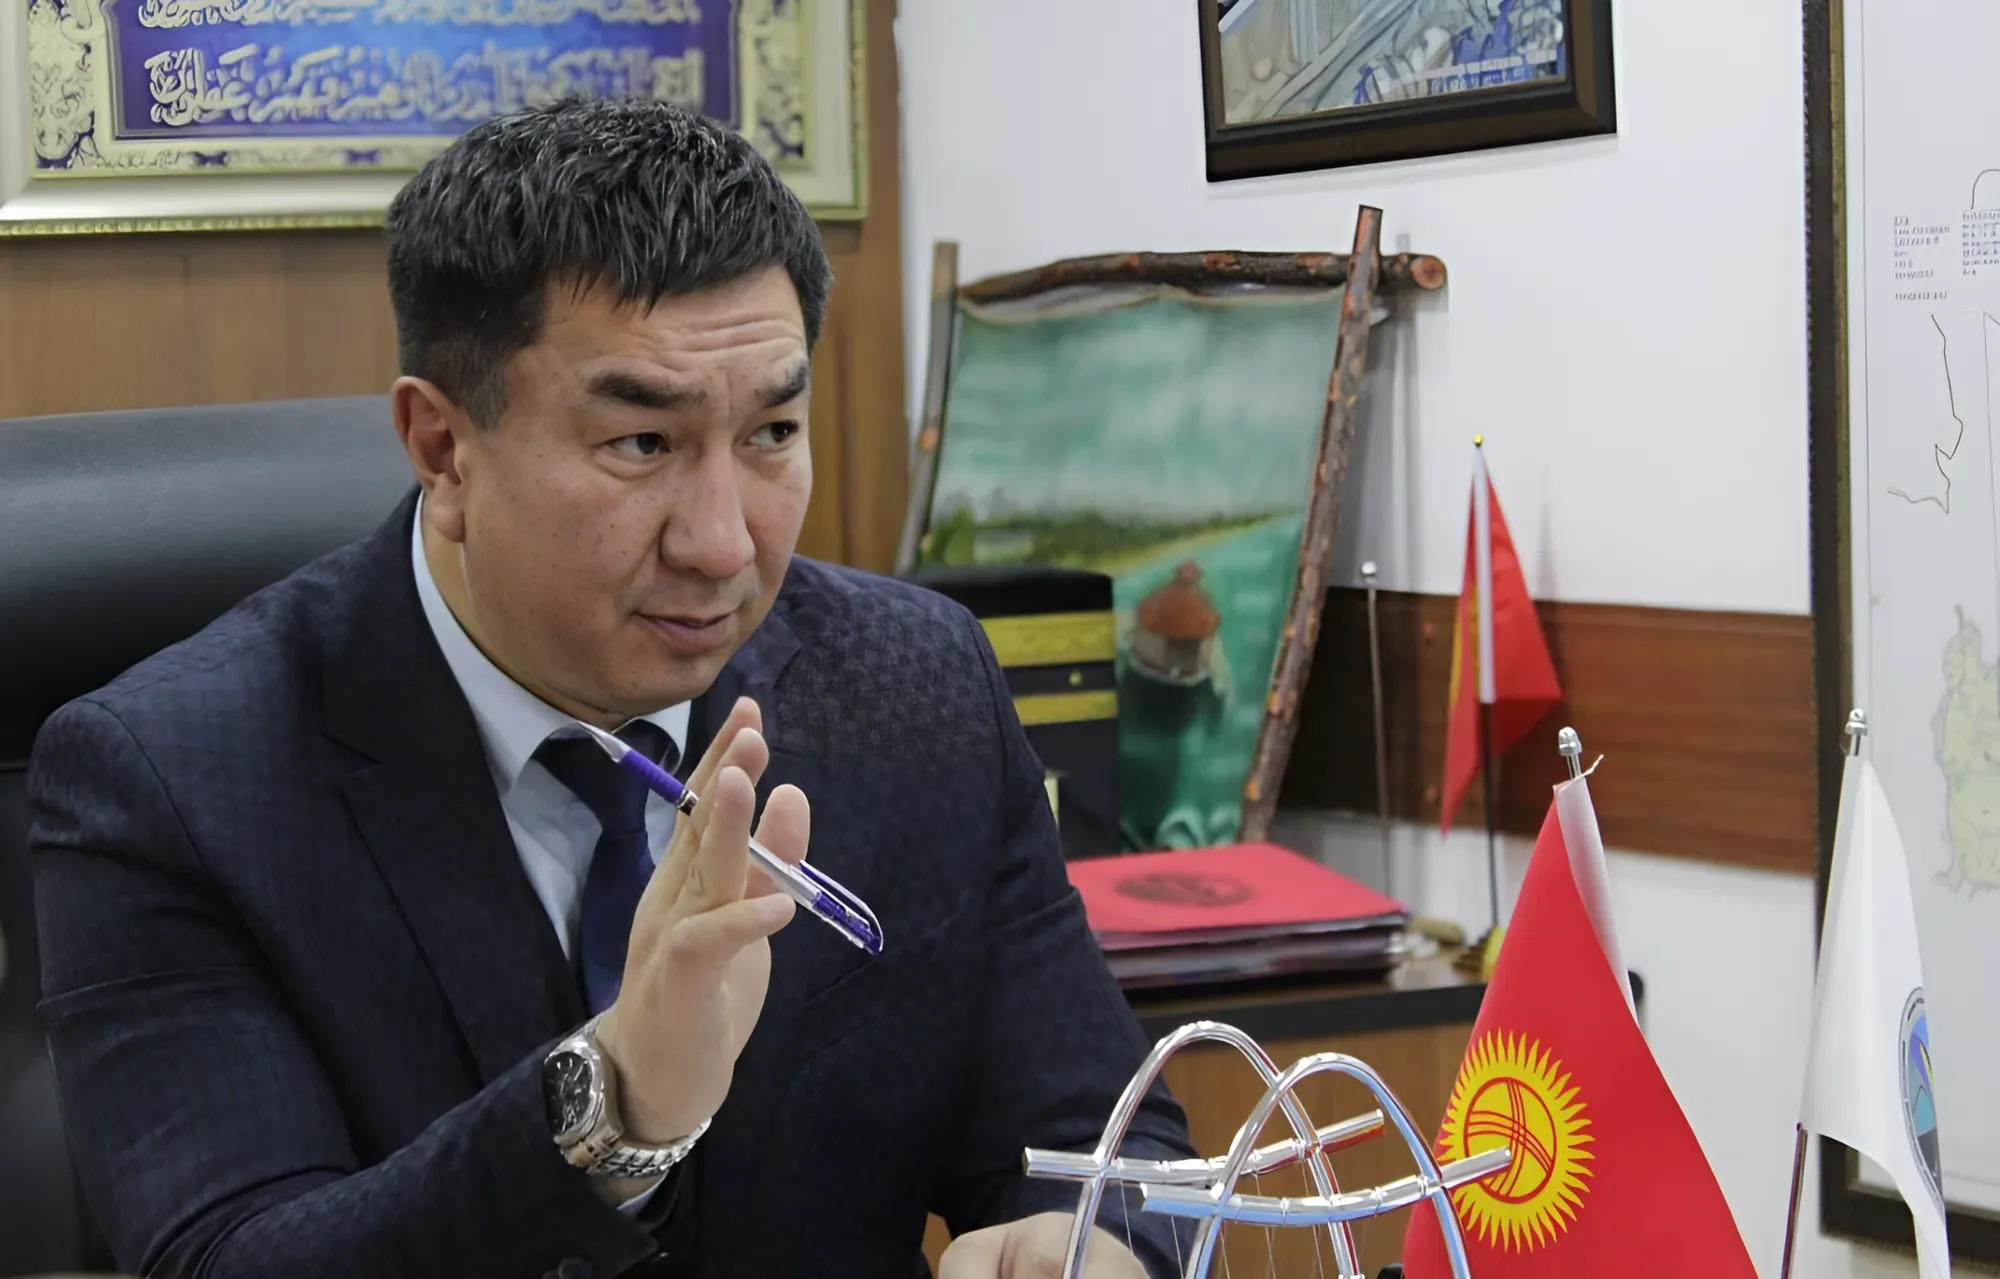 Кыргызстанды темир жол туюгунан алып чыгуу, жолдорду электрлештирүү жана КЭР – КР – ӨР мегадолбоору – Транспорт министри менен маек